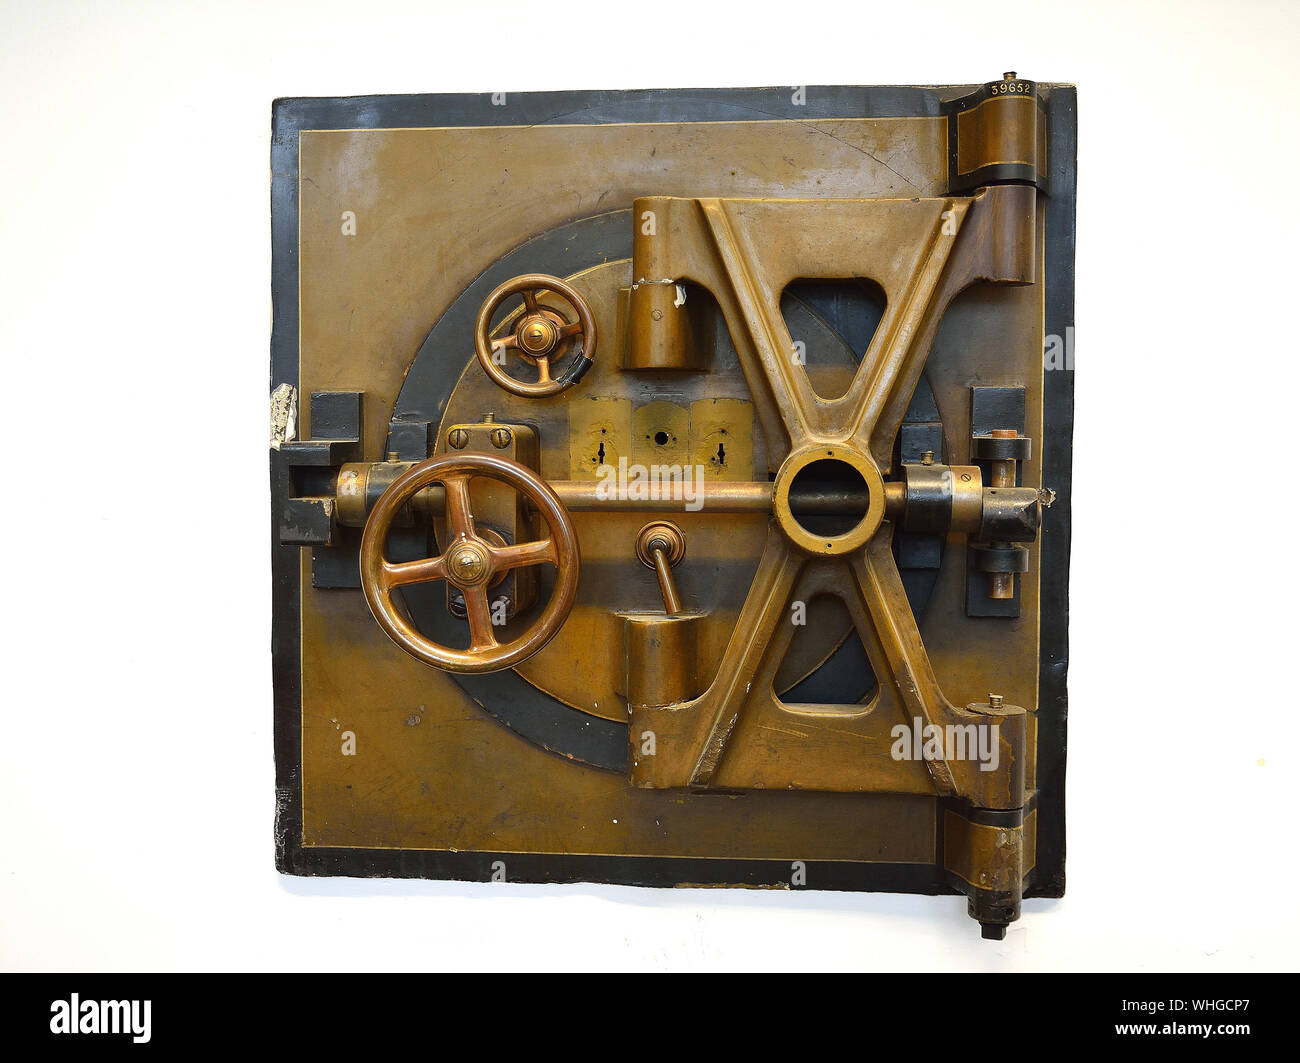 2 Fotografien einer Vintage Bank Vault, offene und geschlossene zeigt eine finanzielle Sicherheit, Schlosser oder banking Konzept Stockfoto